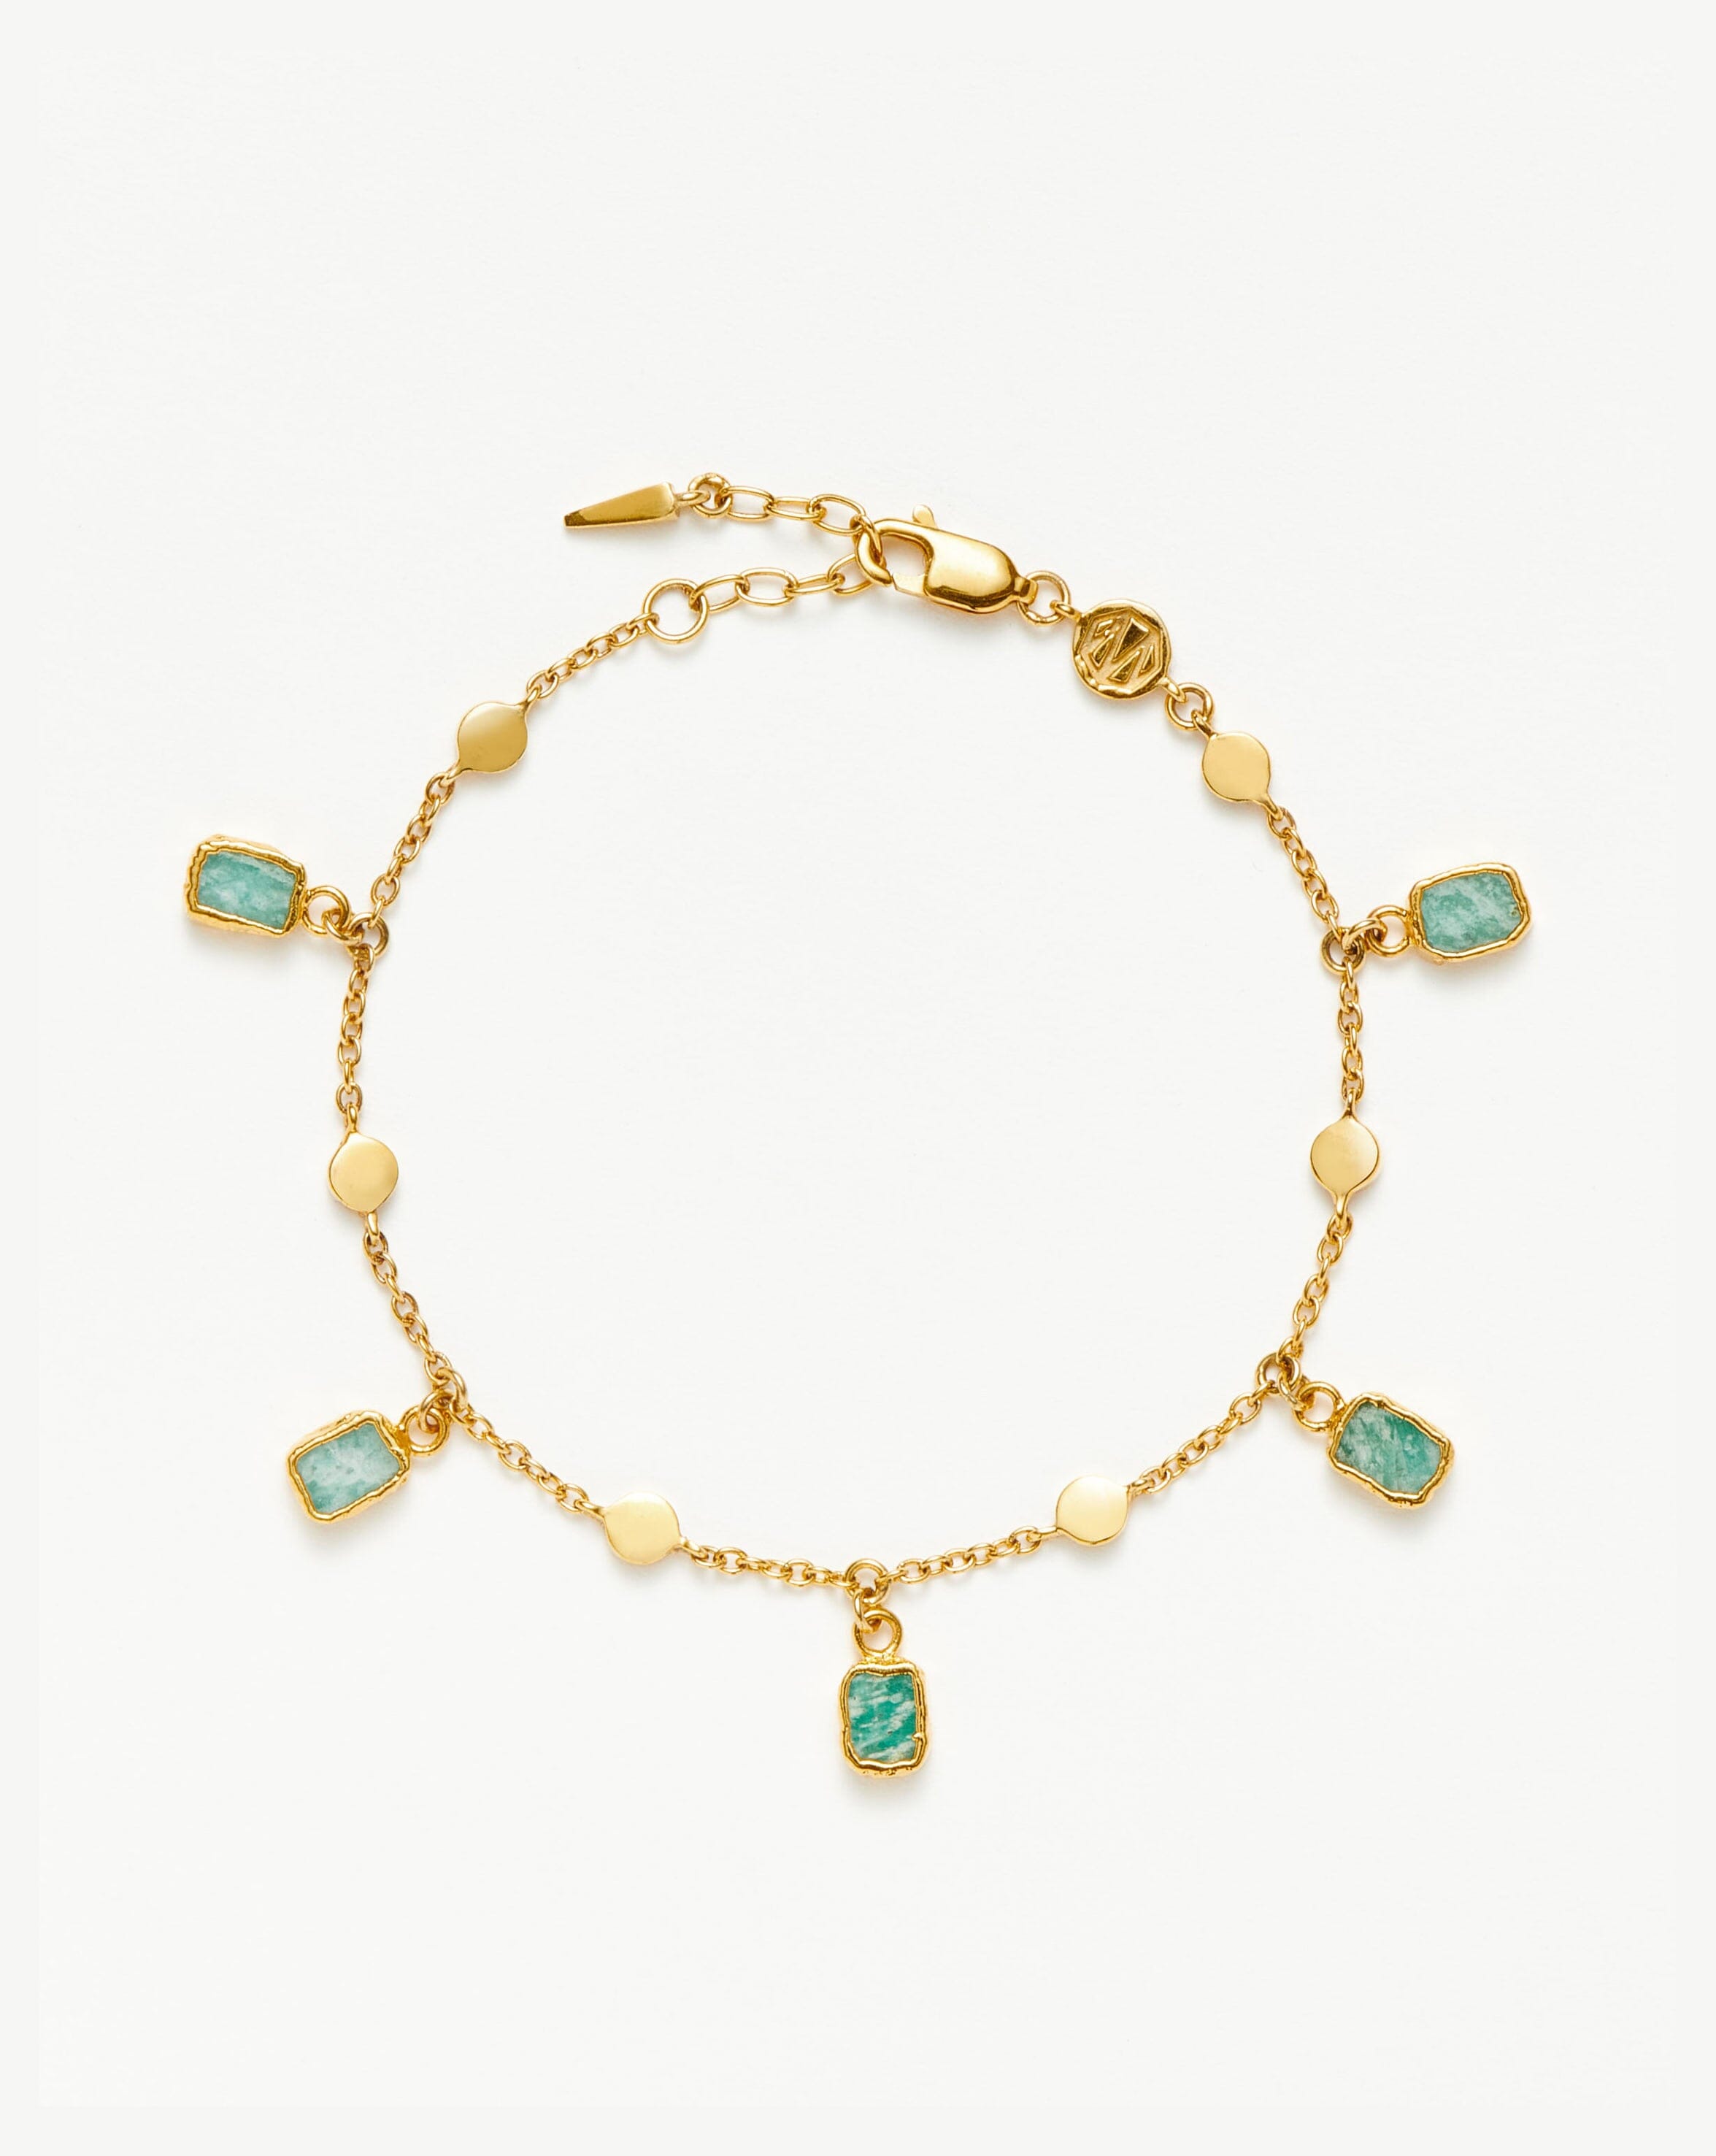 Larger Gold Llama Charm for Bracelet Made in 14kt Gold Vermeil